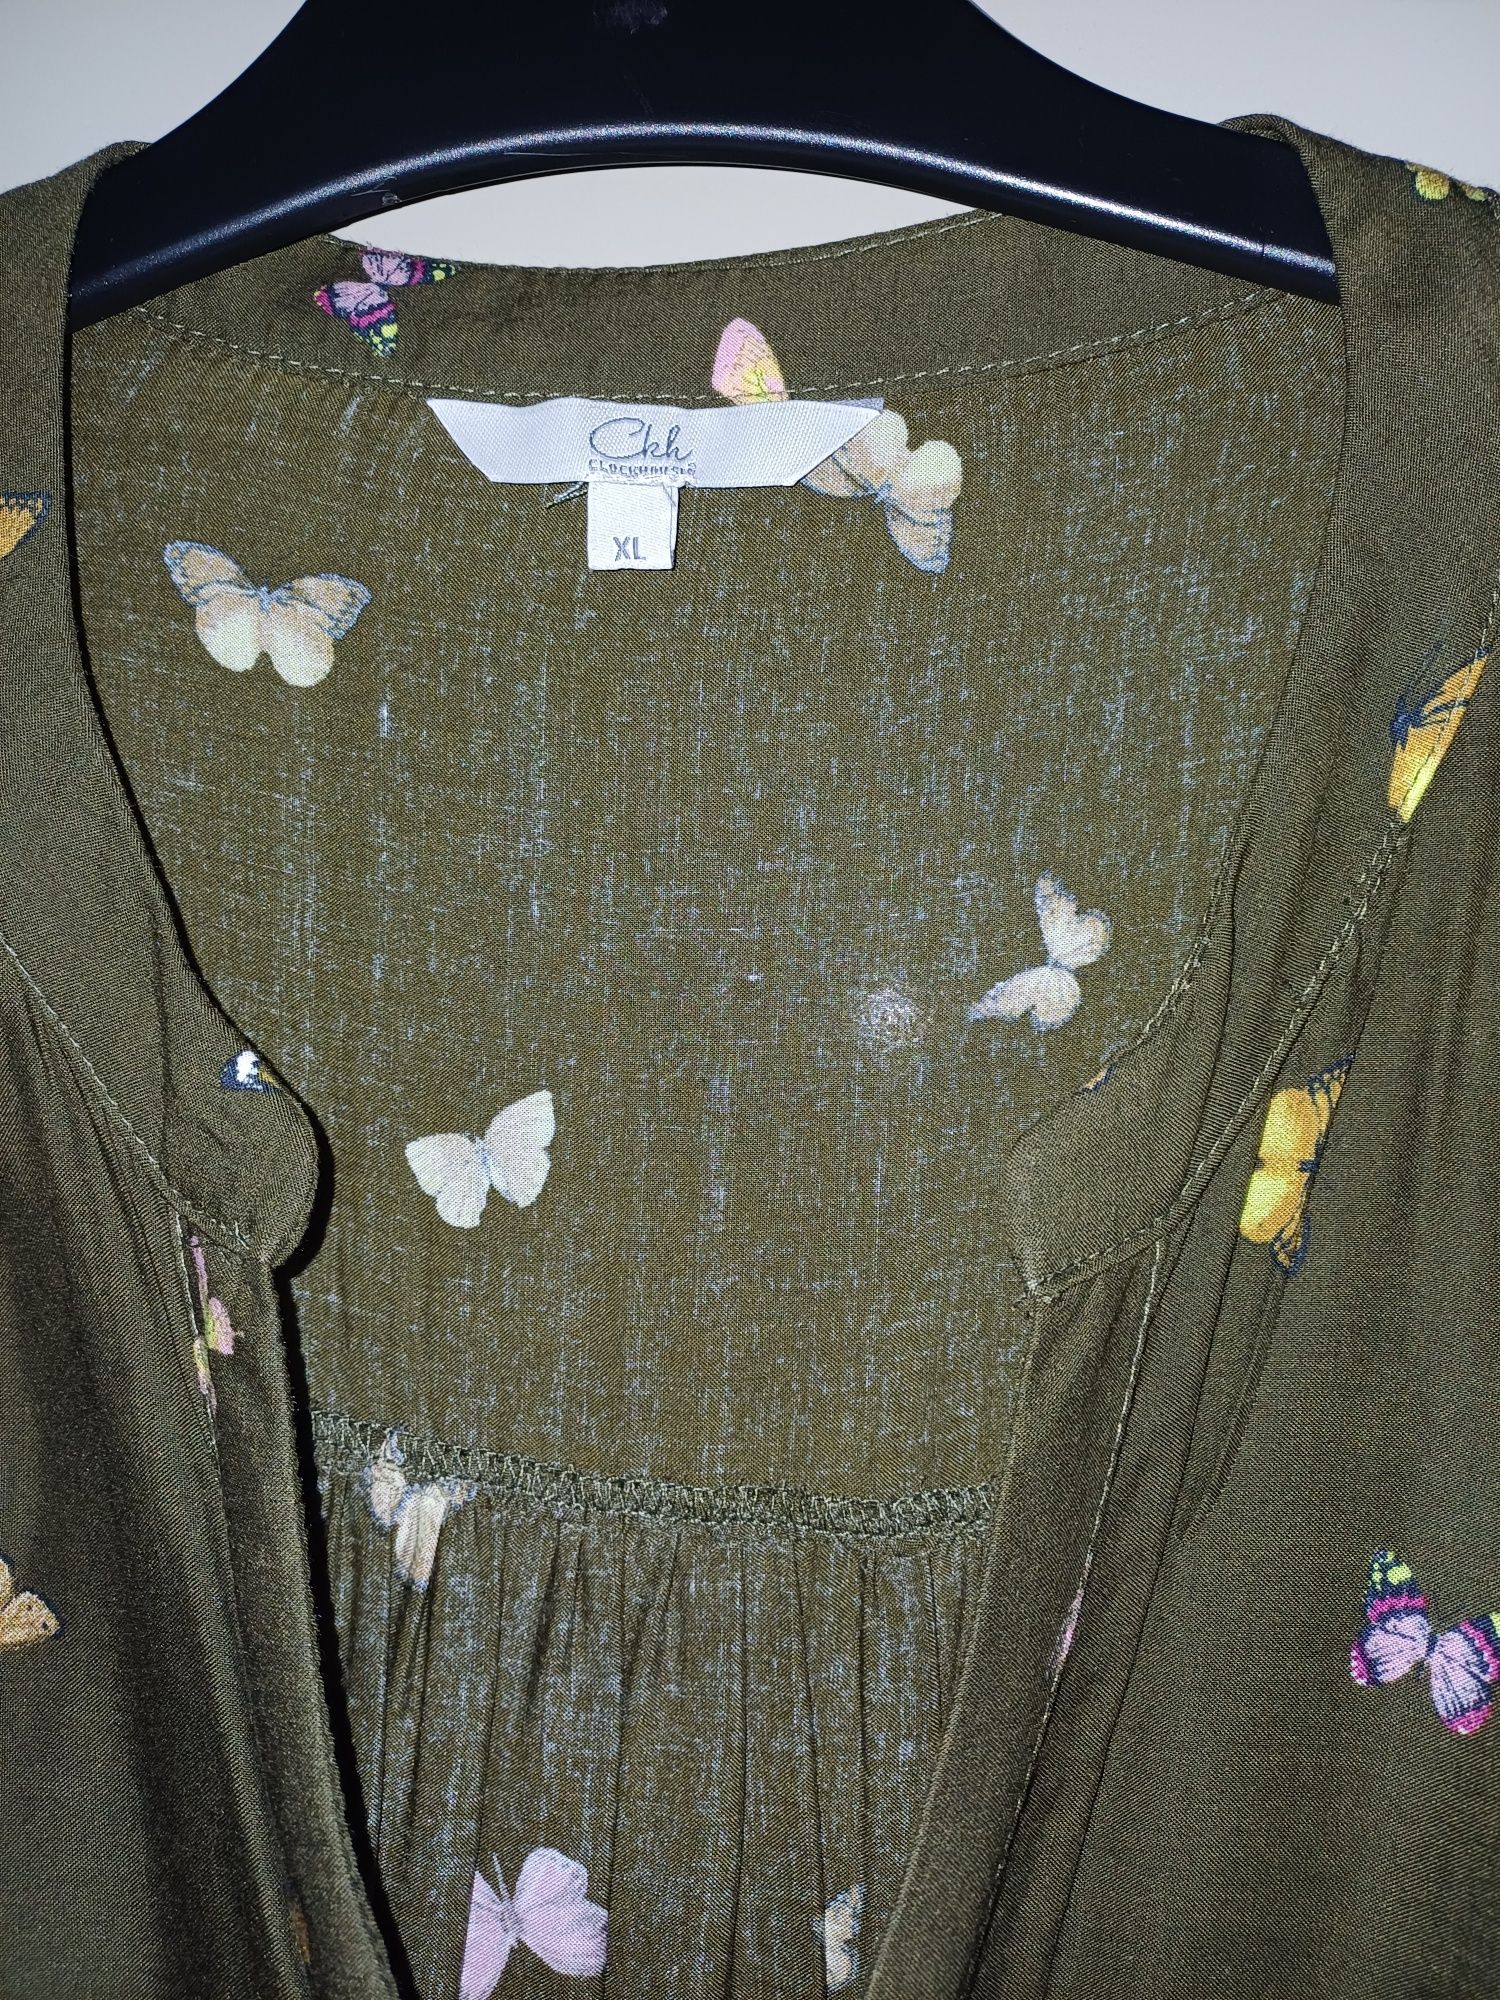 Vestido estampado com borboletas e flores. Manga comprida. 
Tamanho L/